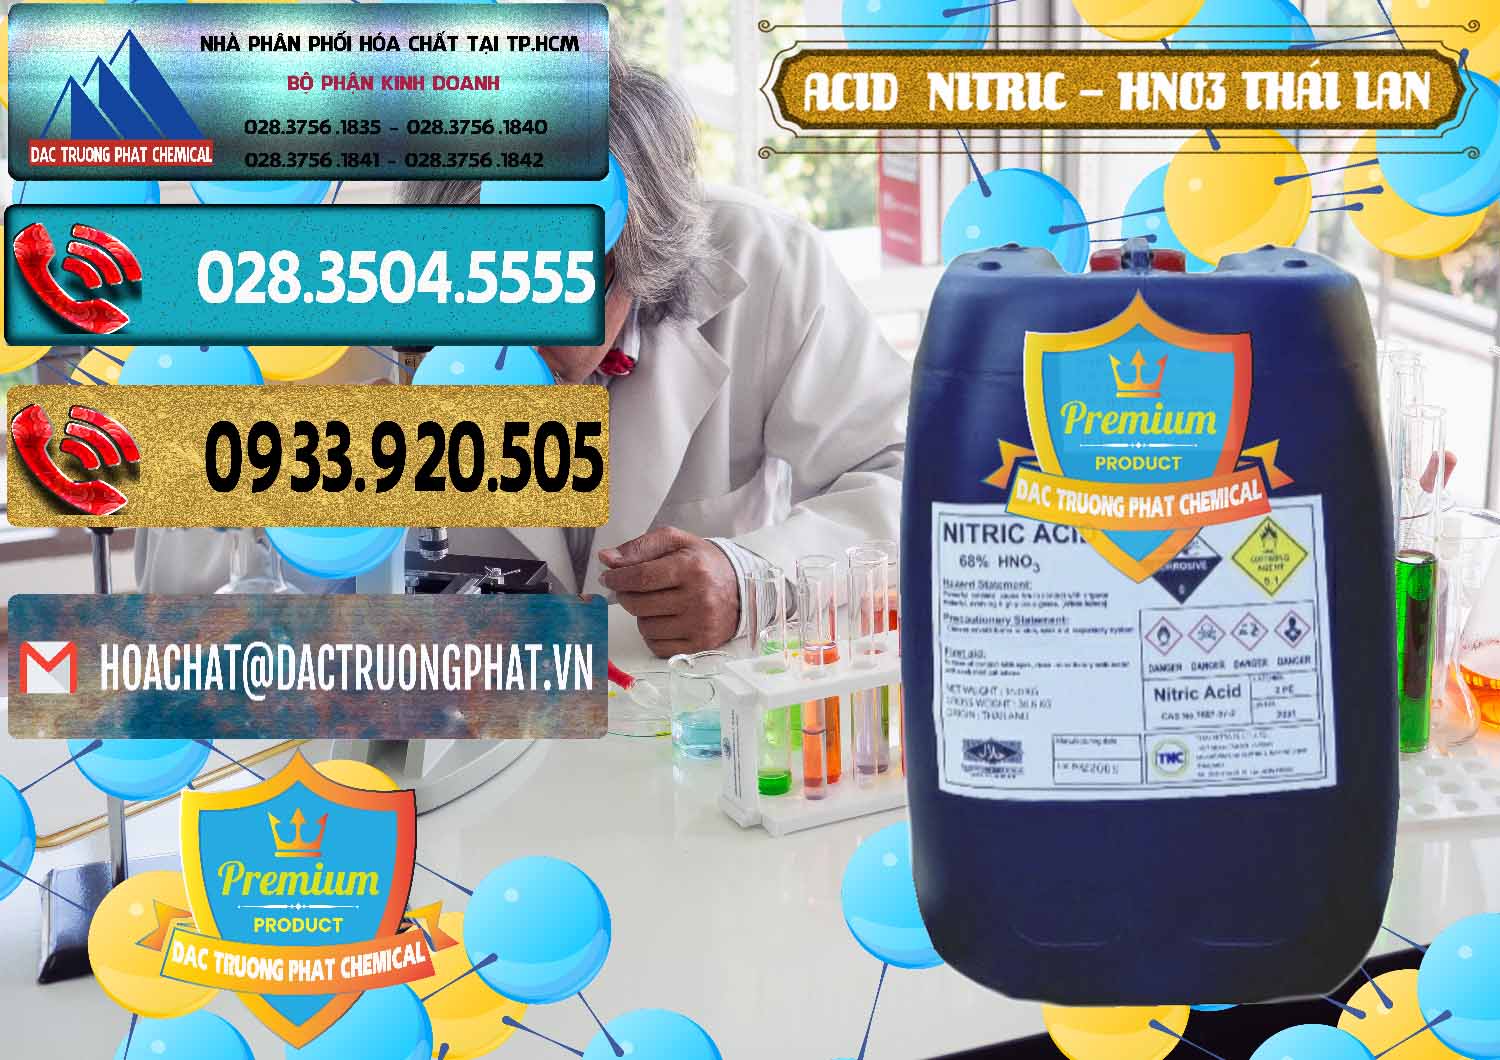 Nơi chuyên bán _ phân phối Acid Nitric – Axit Nitric HNO3 Thái Lan Thailand - 0344 - Nơi cung ứng _ phân phối hóa chất tại TP.HCM - hoachatdetnhuom.com